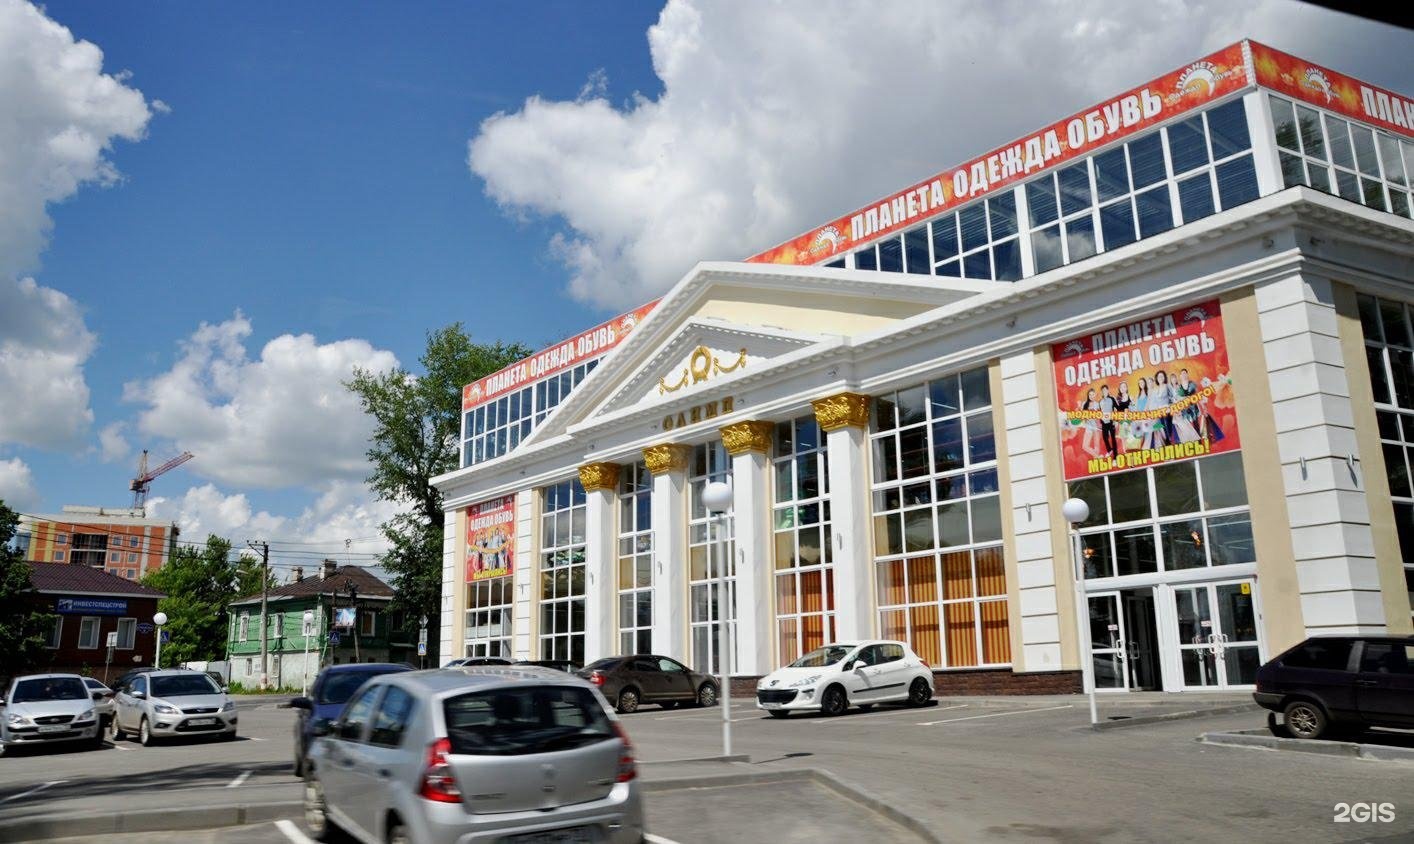 Магазин Обуви Кари В Ульяновске